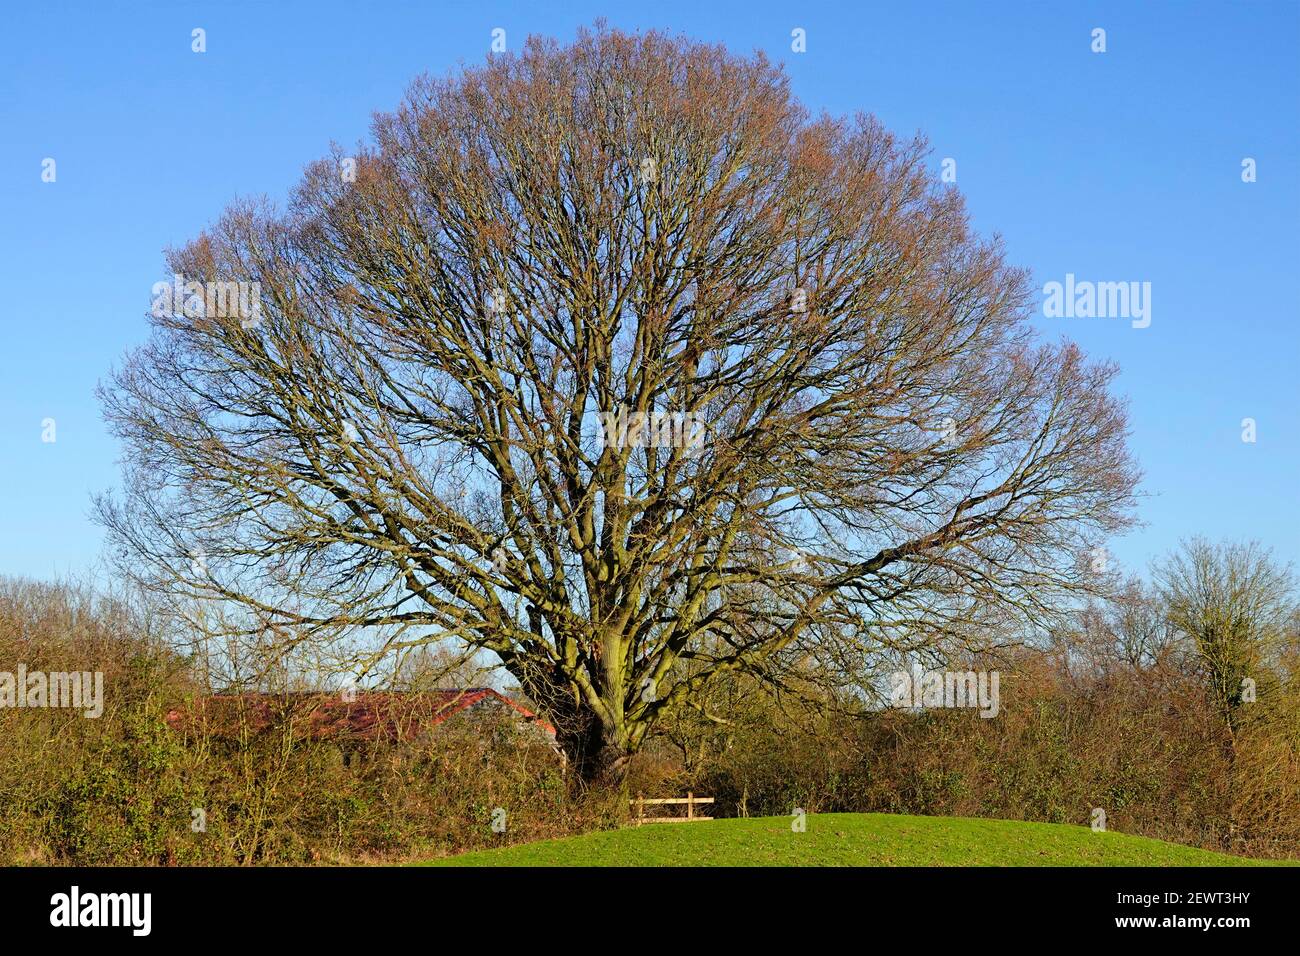 Januar Winter blauer Himmel Sonnenschein in ländlichen Landschaft Ansicht Single Englisch Laubholz Eiche Baum & Landschaft hedgerow Brentwood Essex England GB Stockfoto